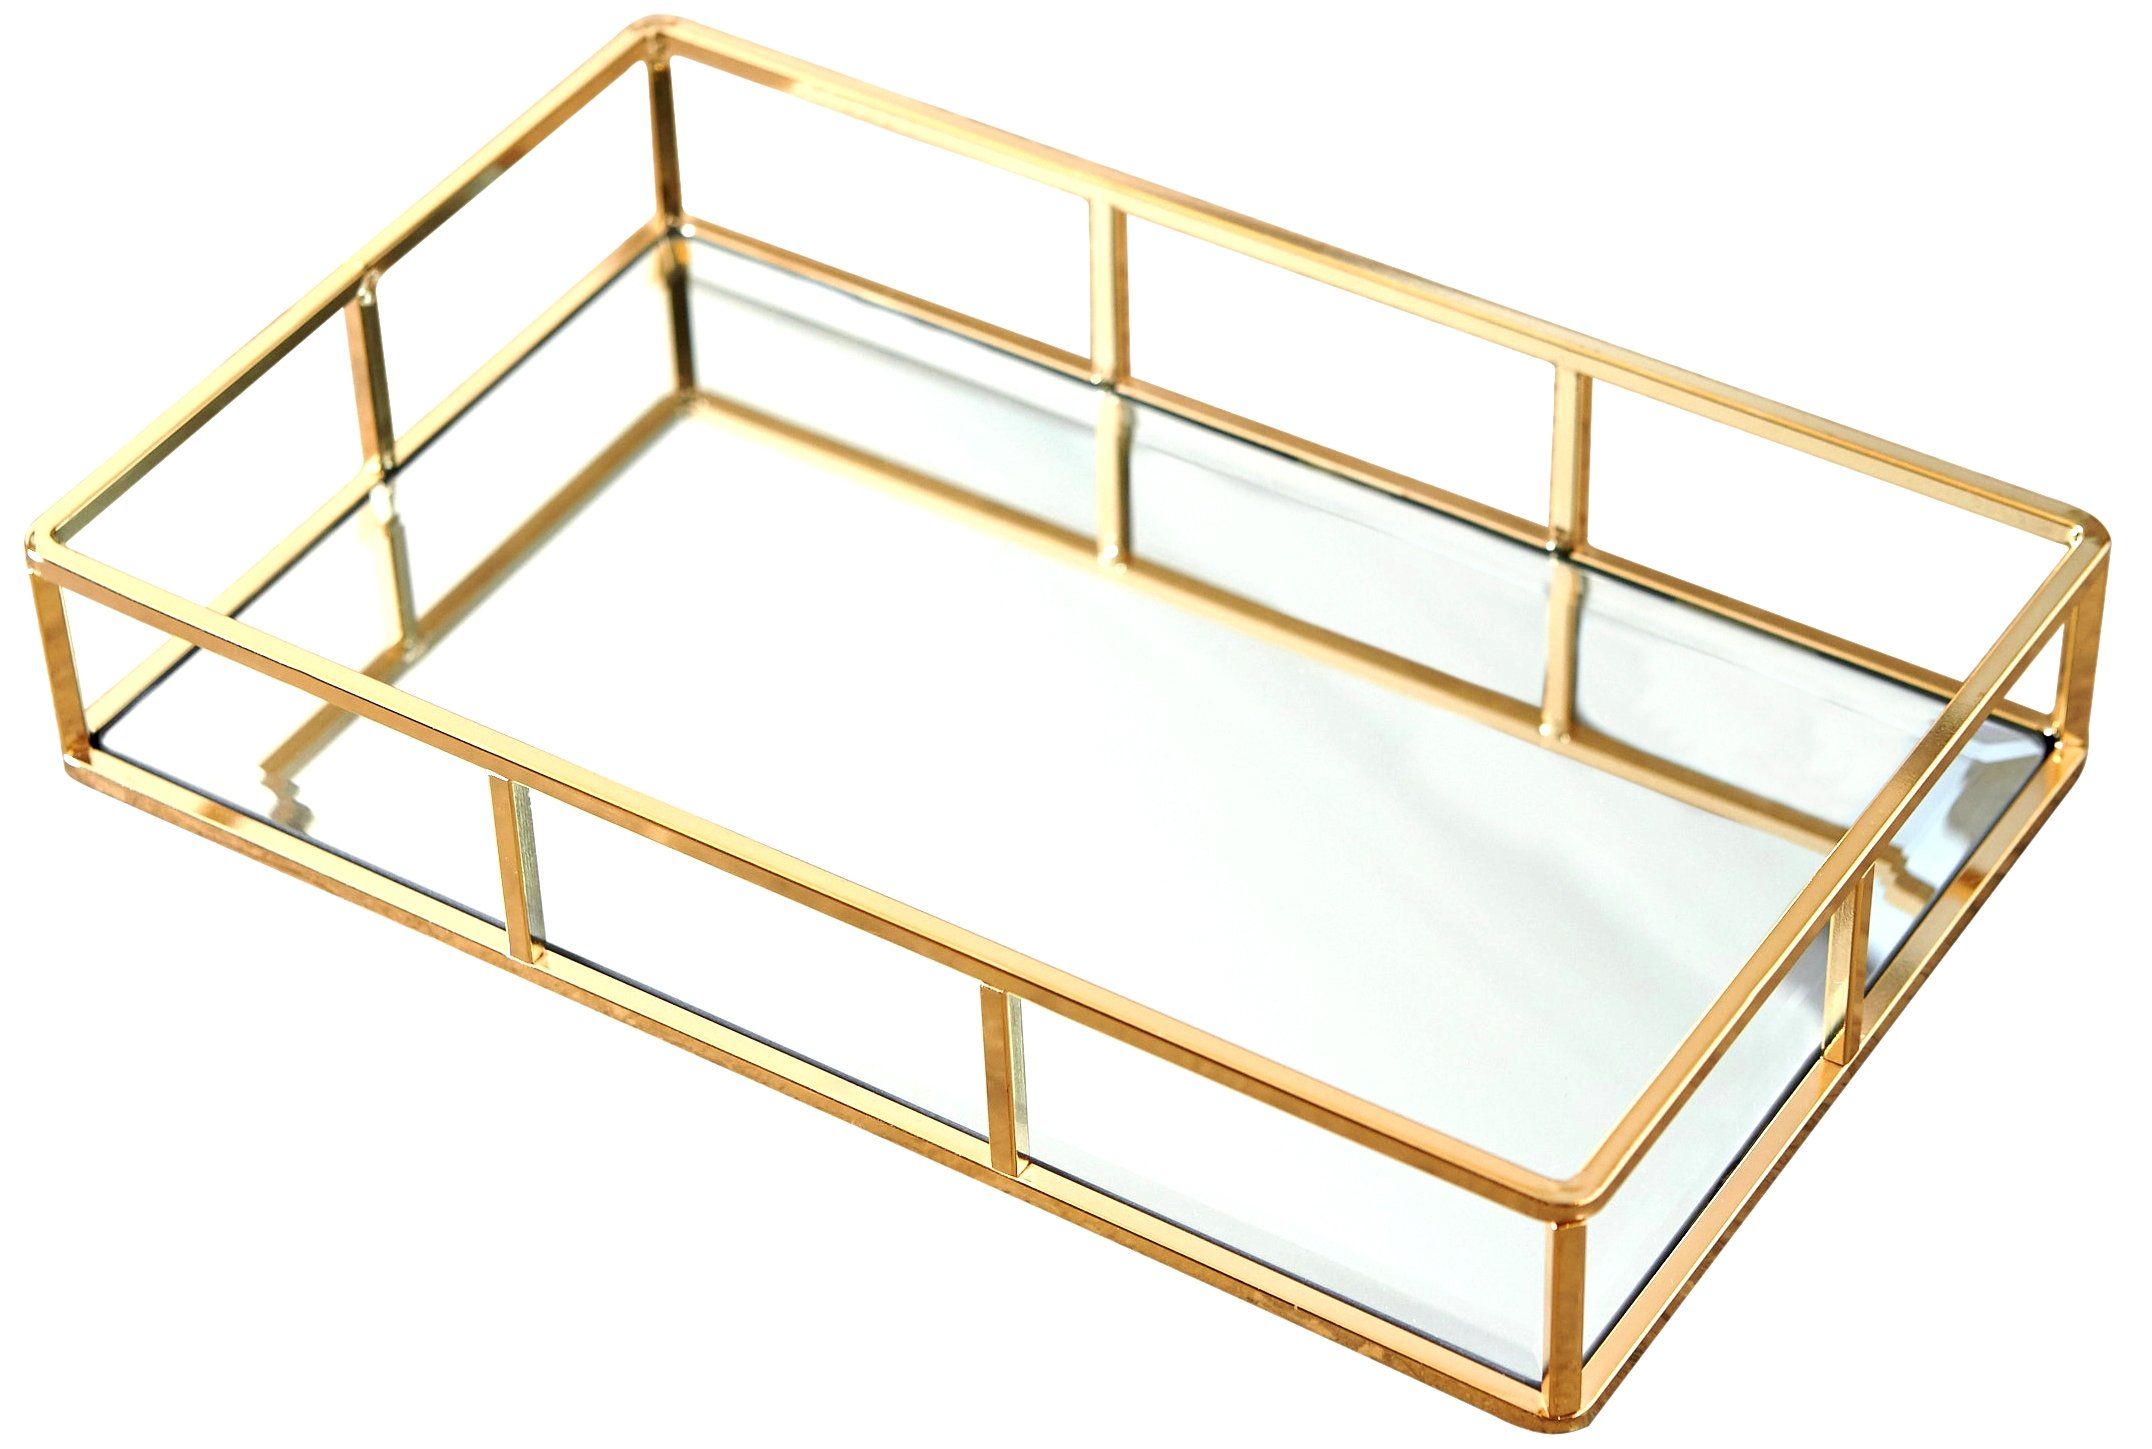 PuTwo Tray Mirror, Gold Mirror Tray Perfume Tray Mirror Vanity Tray Dresser Tray Ornate Tray Meta... | Amazon (US)